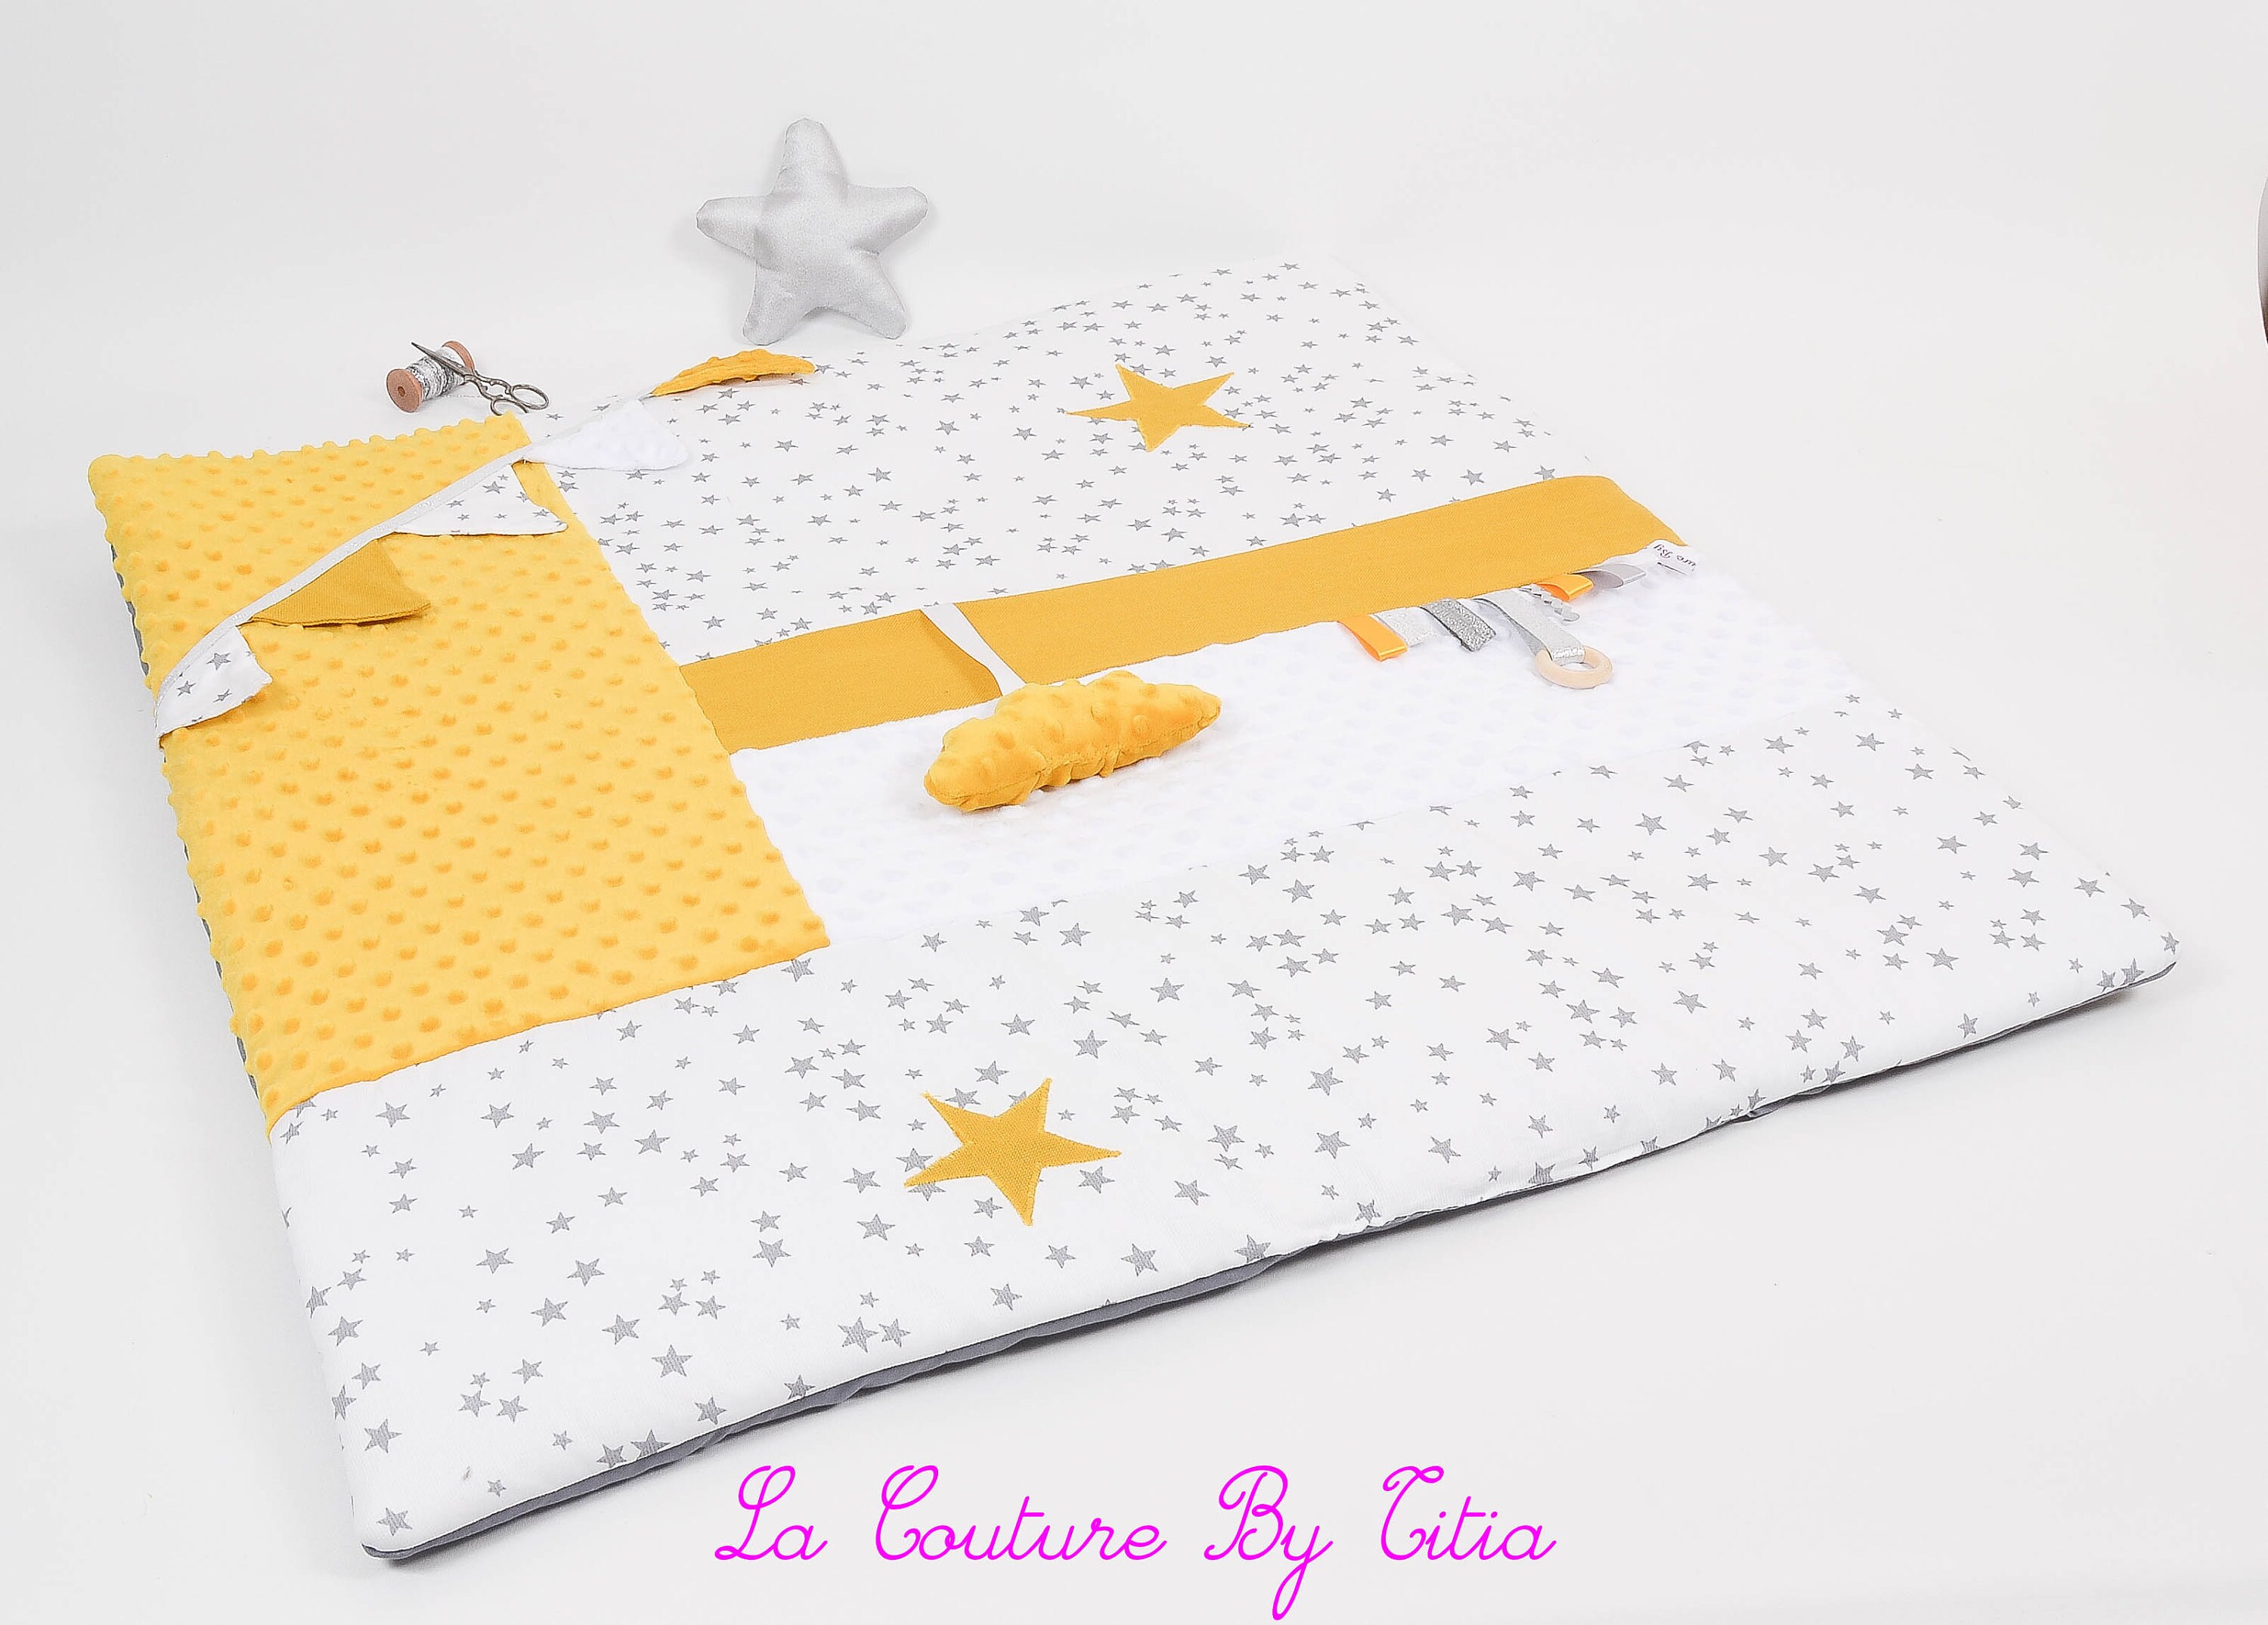 Coudre un tapis d'éveil en patchwork pour bébé - Marie Claire